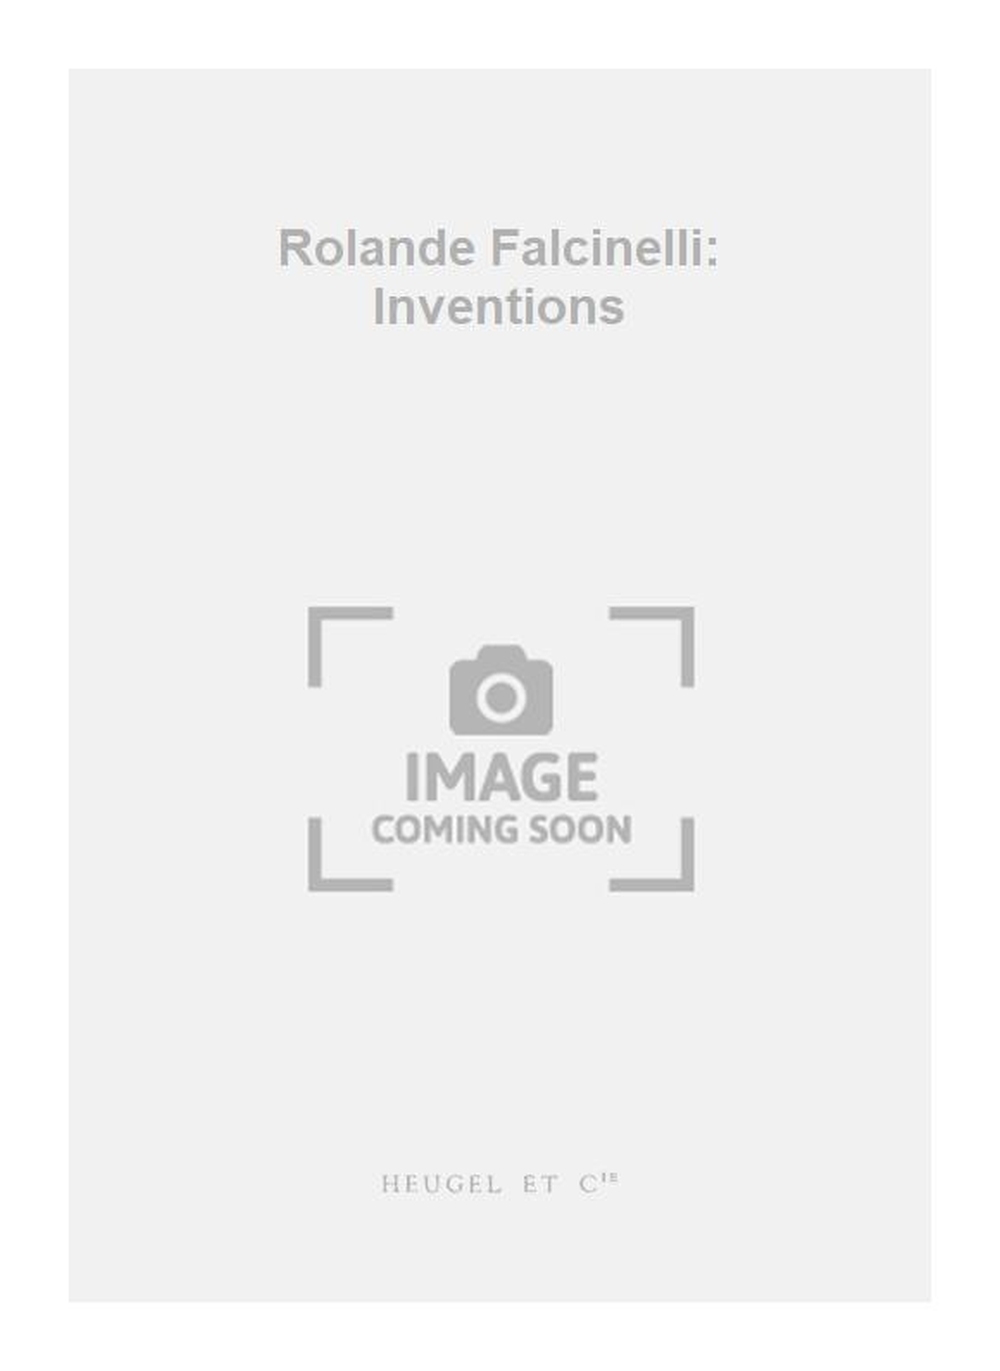 Rolande Falcinelli: Rolande Falcinelli: Inventions